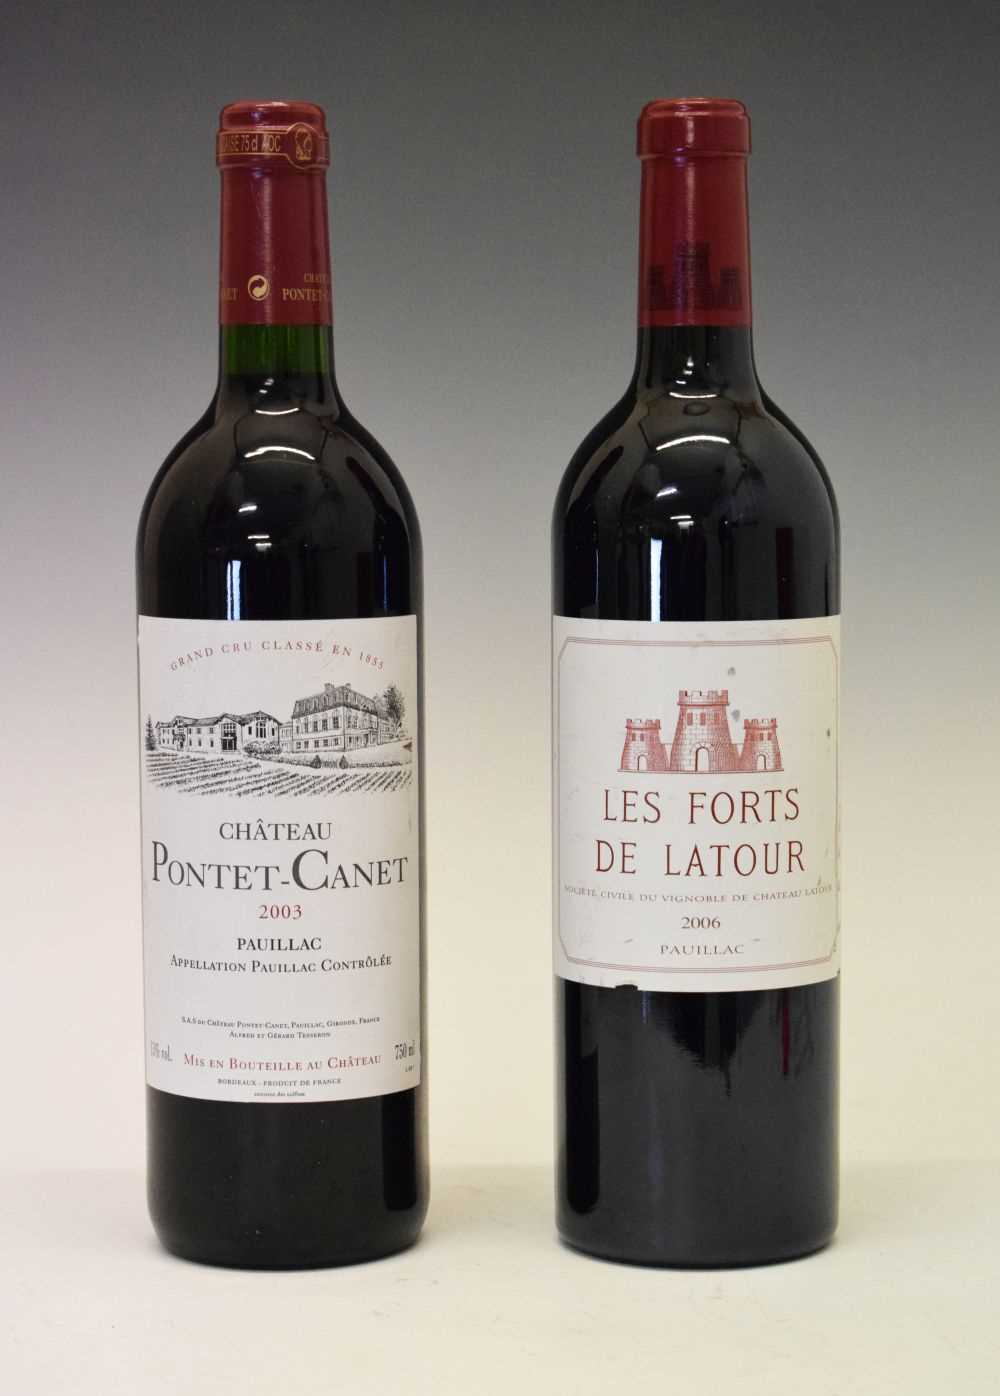 Bottle of Chateau Latour 'Les Forts de Latour' 2006 and a bottle of Chateau Pontet-Canet 2003